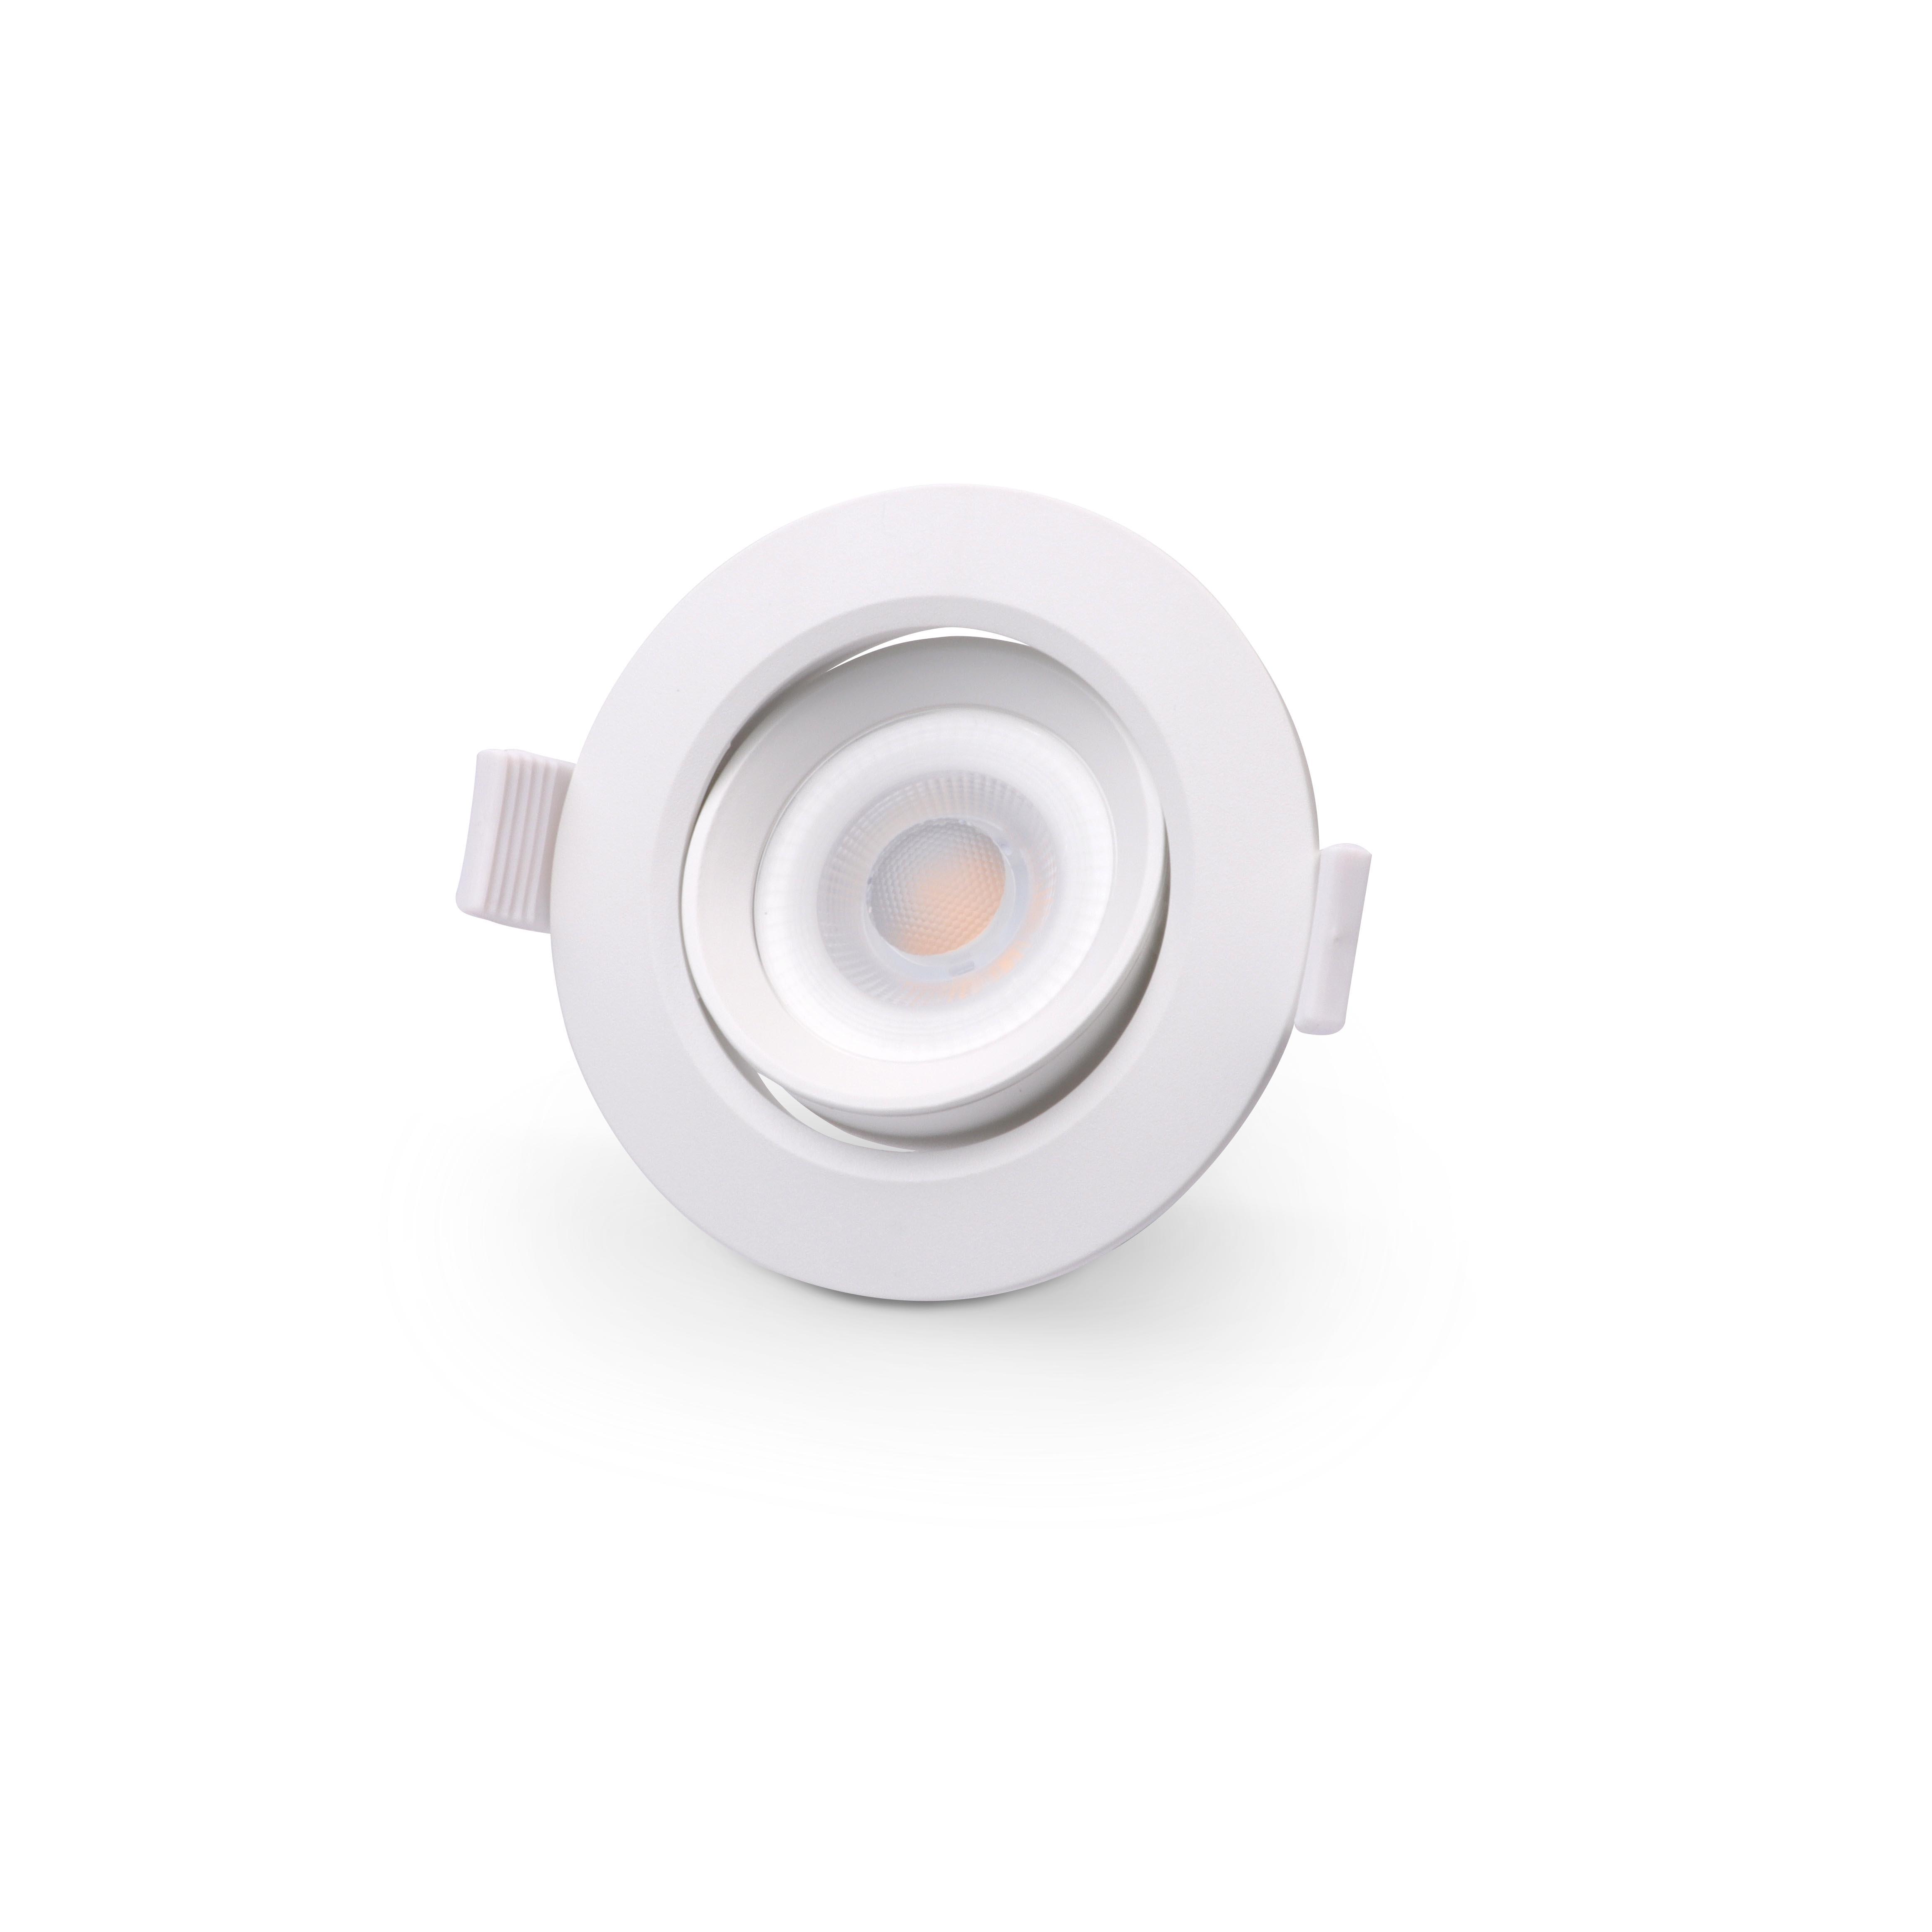 LED Einbaustrahler schwenk 5W Ø85mm 40° weiß - Lichtfarbe: Warmweiß 3000K